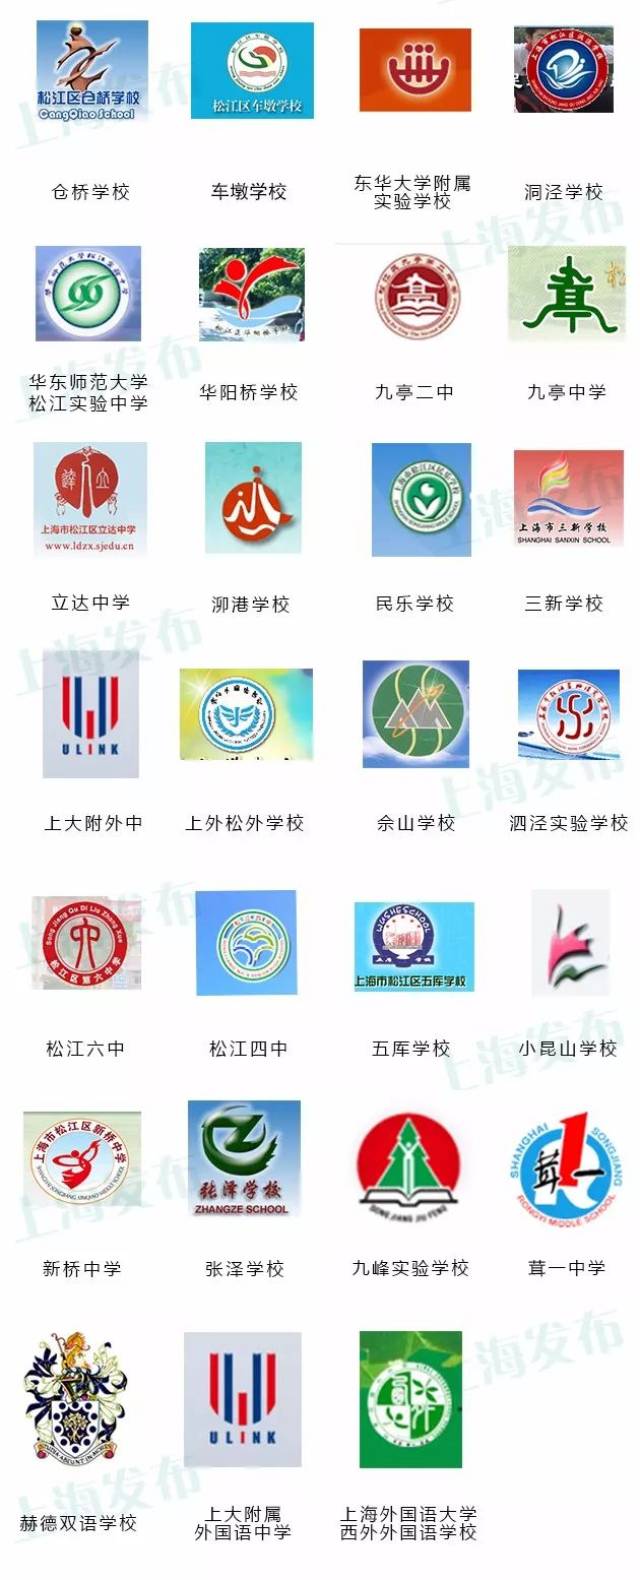 上海383所初中校徽公布,能找到你的母校吗?